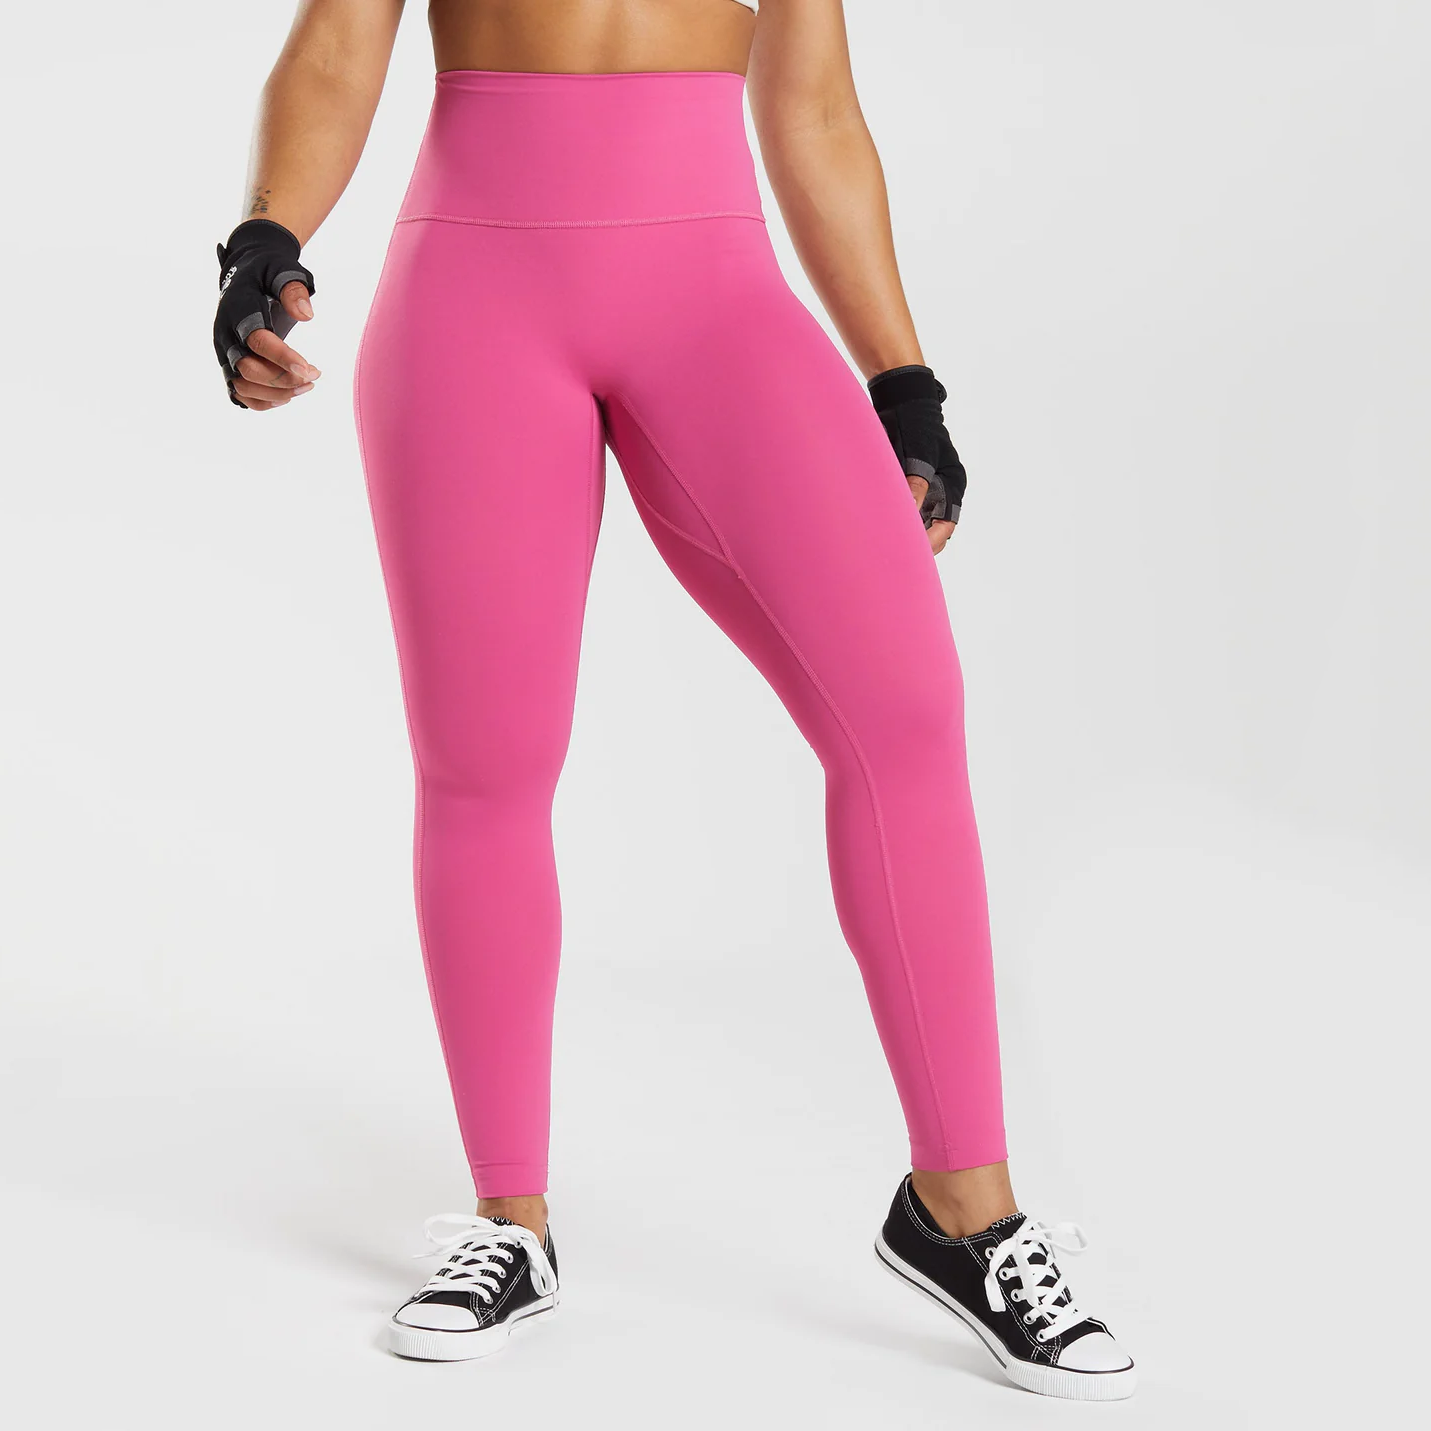 Gymshark Training Leggings - Pink